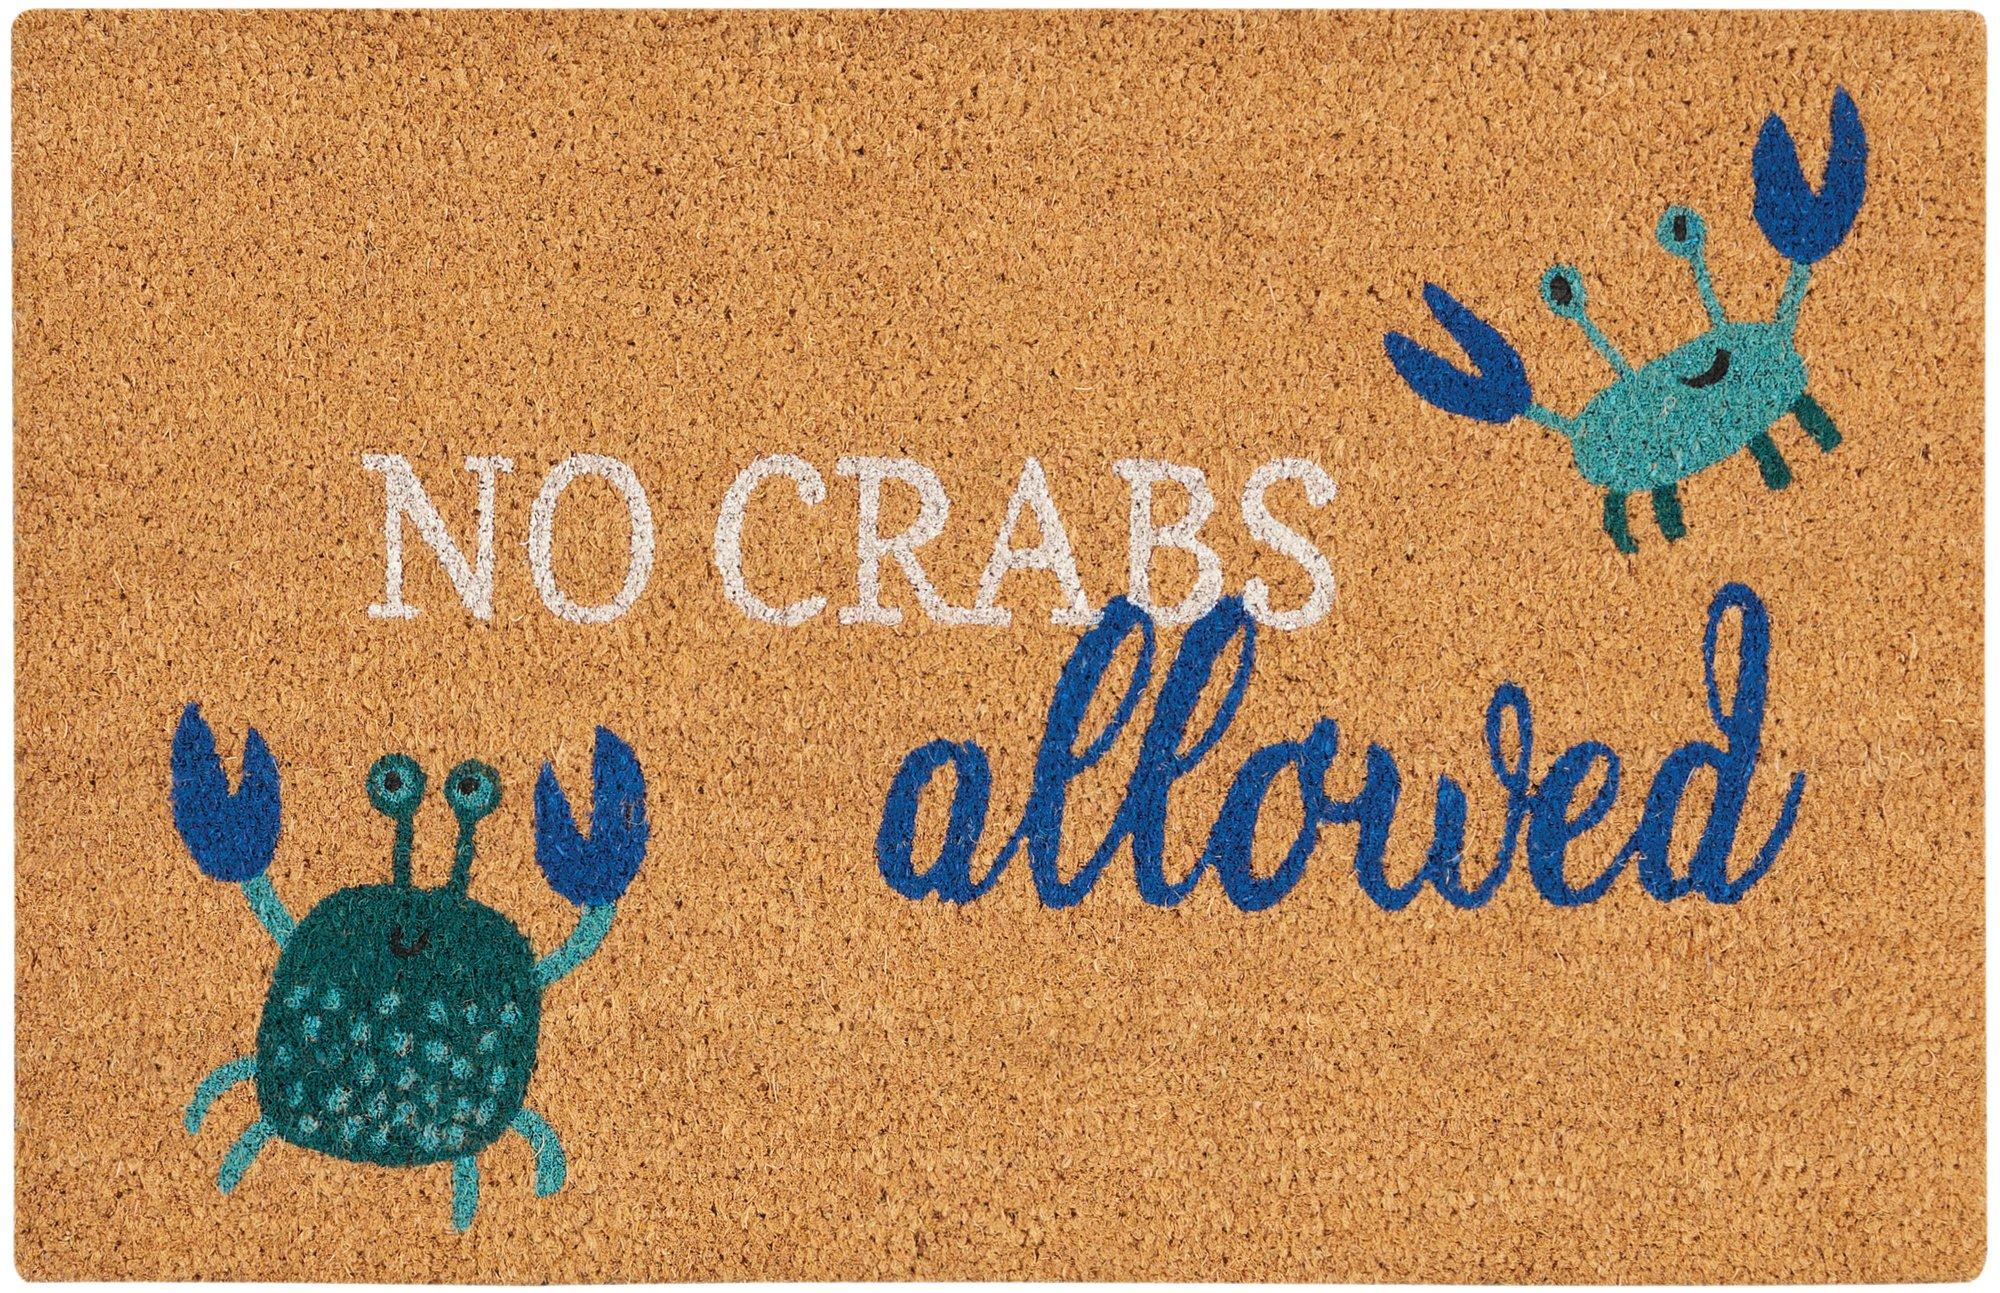 No Crabs Allowed Coir Doormat